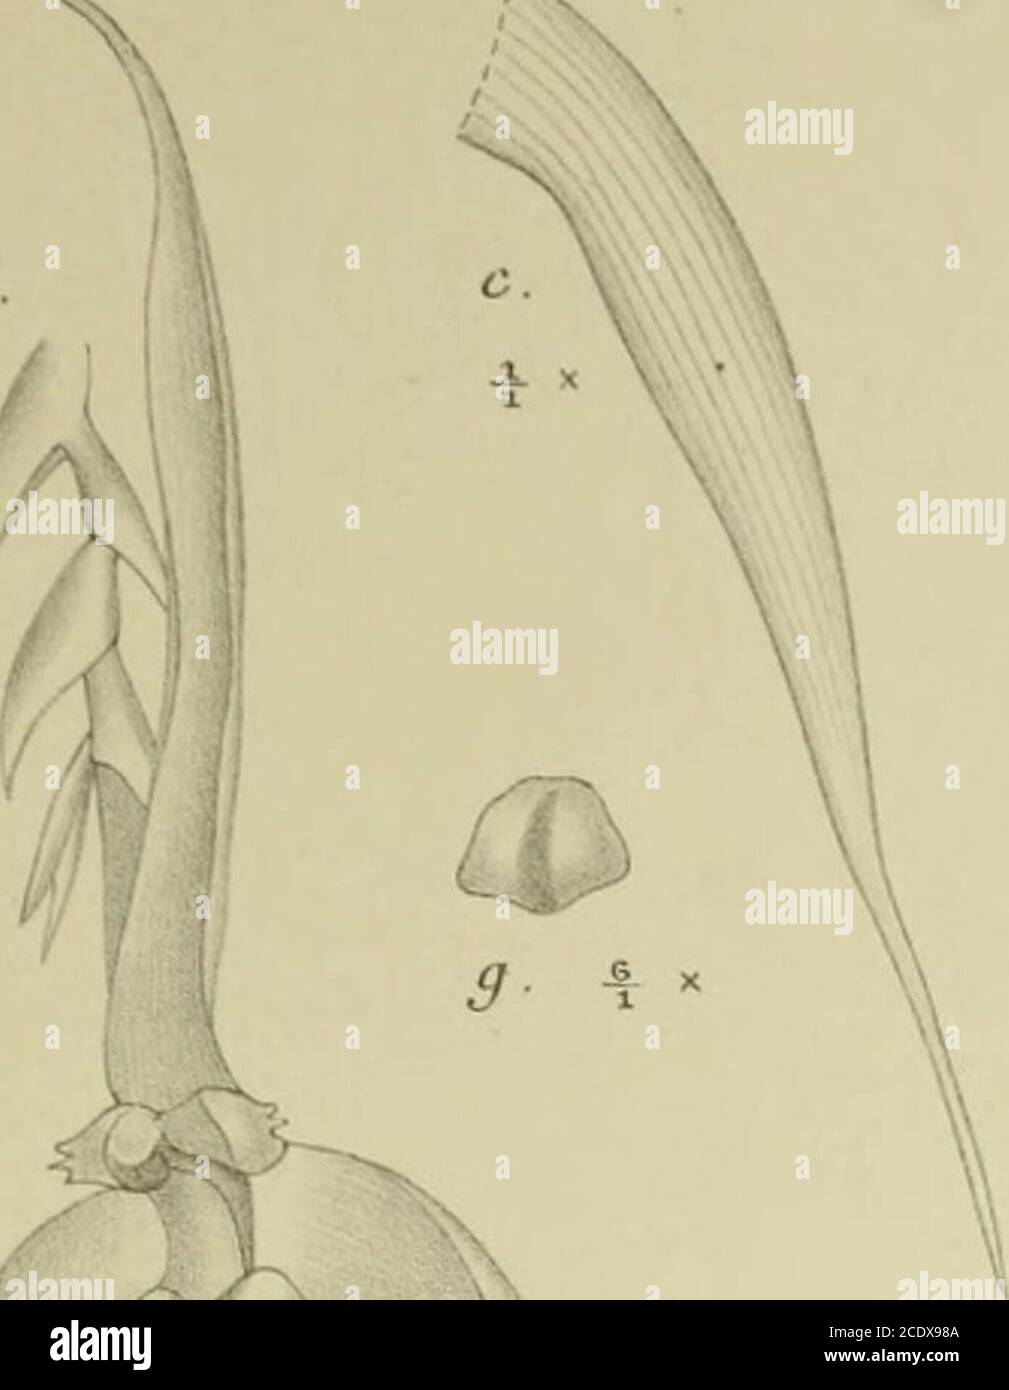 . Nova Guinea : résultats de l'expédition scientifique néerlandaise à la Nouvelle-Guinée .. . la I. W. M. Trap impr. XXXIV. m. Bulbophyllum thrixspermiflornm J. J S. a. Flos 6/s. b. Sepalum dorsale /i- c. Sepalum latérale /,. d. Petalum /j.c. Labellum 7/v f. Gynosteniium l0/j. g. Anthera °/,. XXXIV. ii2. Bulbophyllum trifllum J. J. S. a. Flos 8/3. /. Sepalum dorsale /j. c. Sepalum latérale l%. d. Petalum •/,. e. Labellum et gynostemium l5/,. f. Labellum expansum is/t. g. Anthera ,8/i- XXXIV. 113. Bulbophyllum Versteegii J. J. S. a. Flos 7/3. /. Sepalum dorsale 3/,. c. Sepalum latérale 3/j. d. Stock Photo